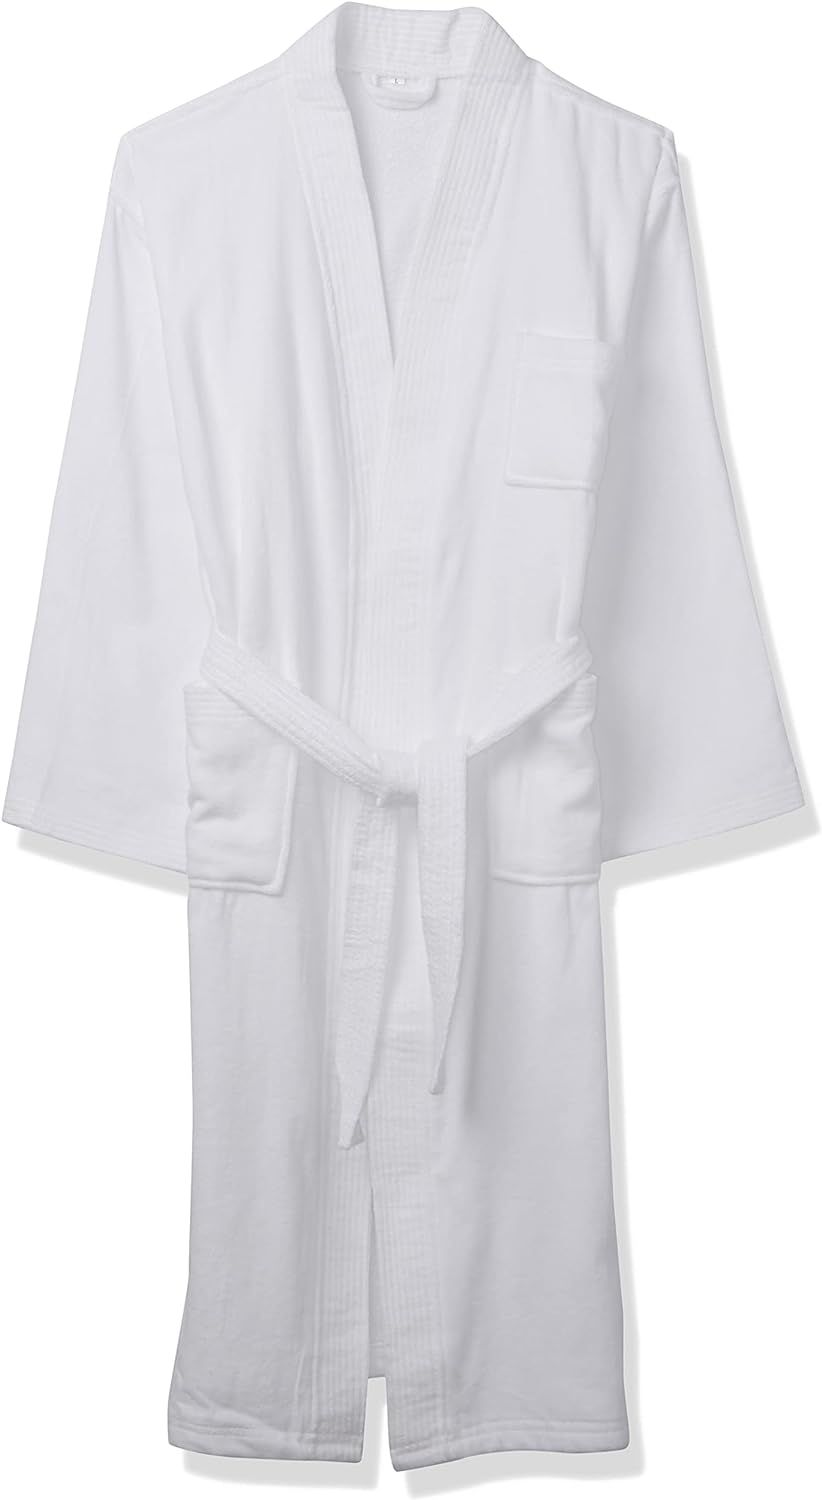 Acanva Women's & Men's Terry Robe Plush Cotton Spa Kimono Bathrobe | Amazon (US)